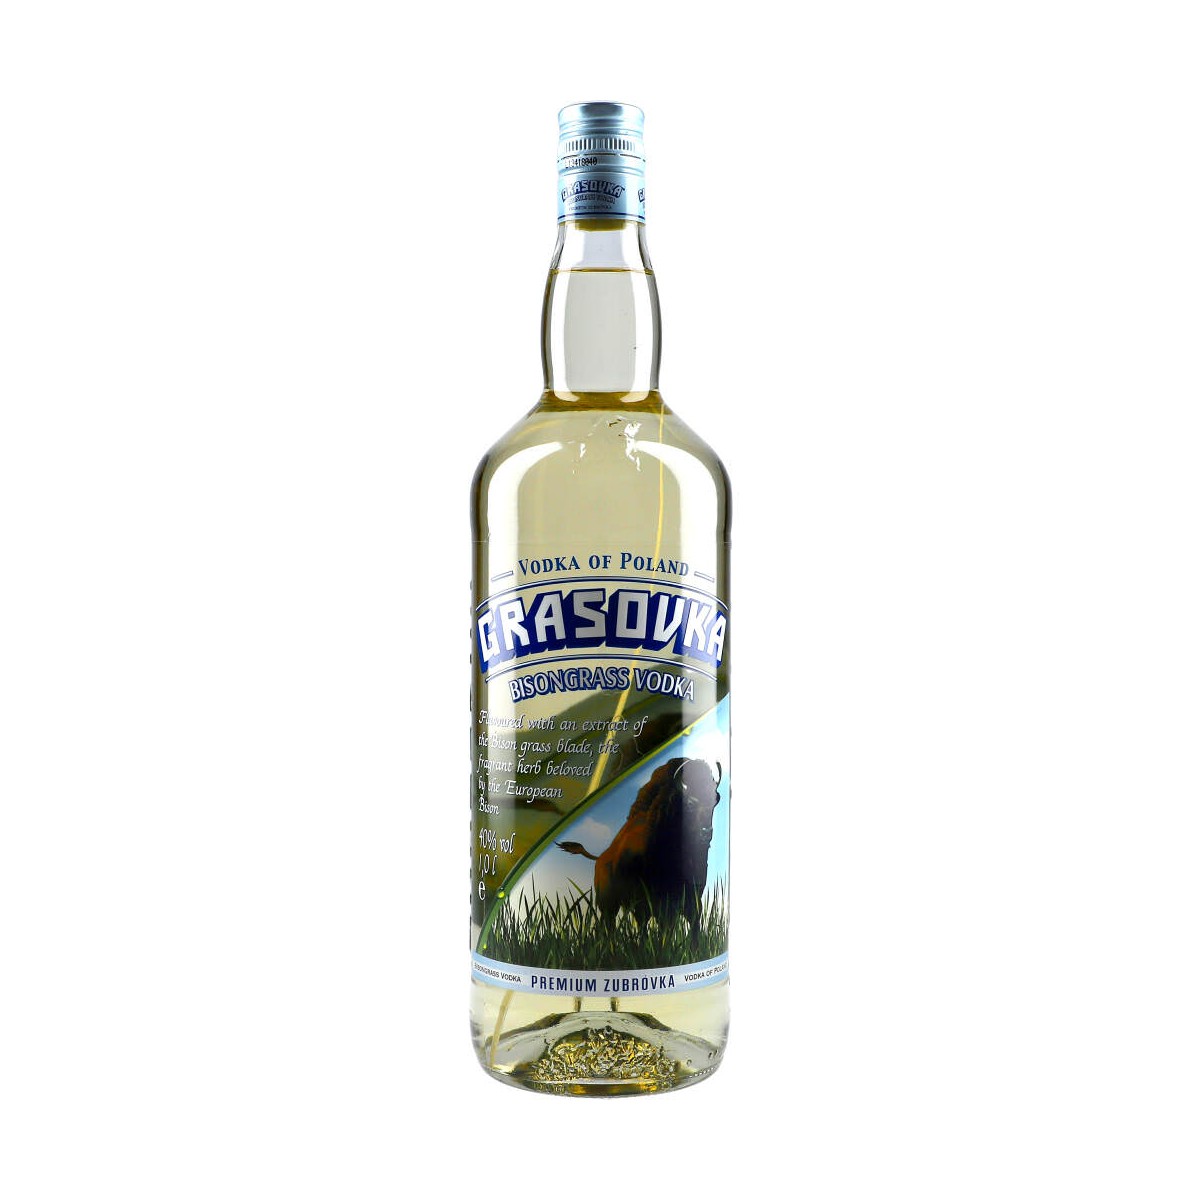 Grasovka 100cl 38% Bisongrass Vodka